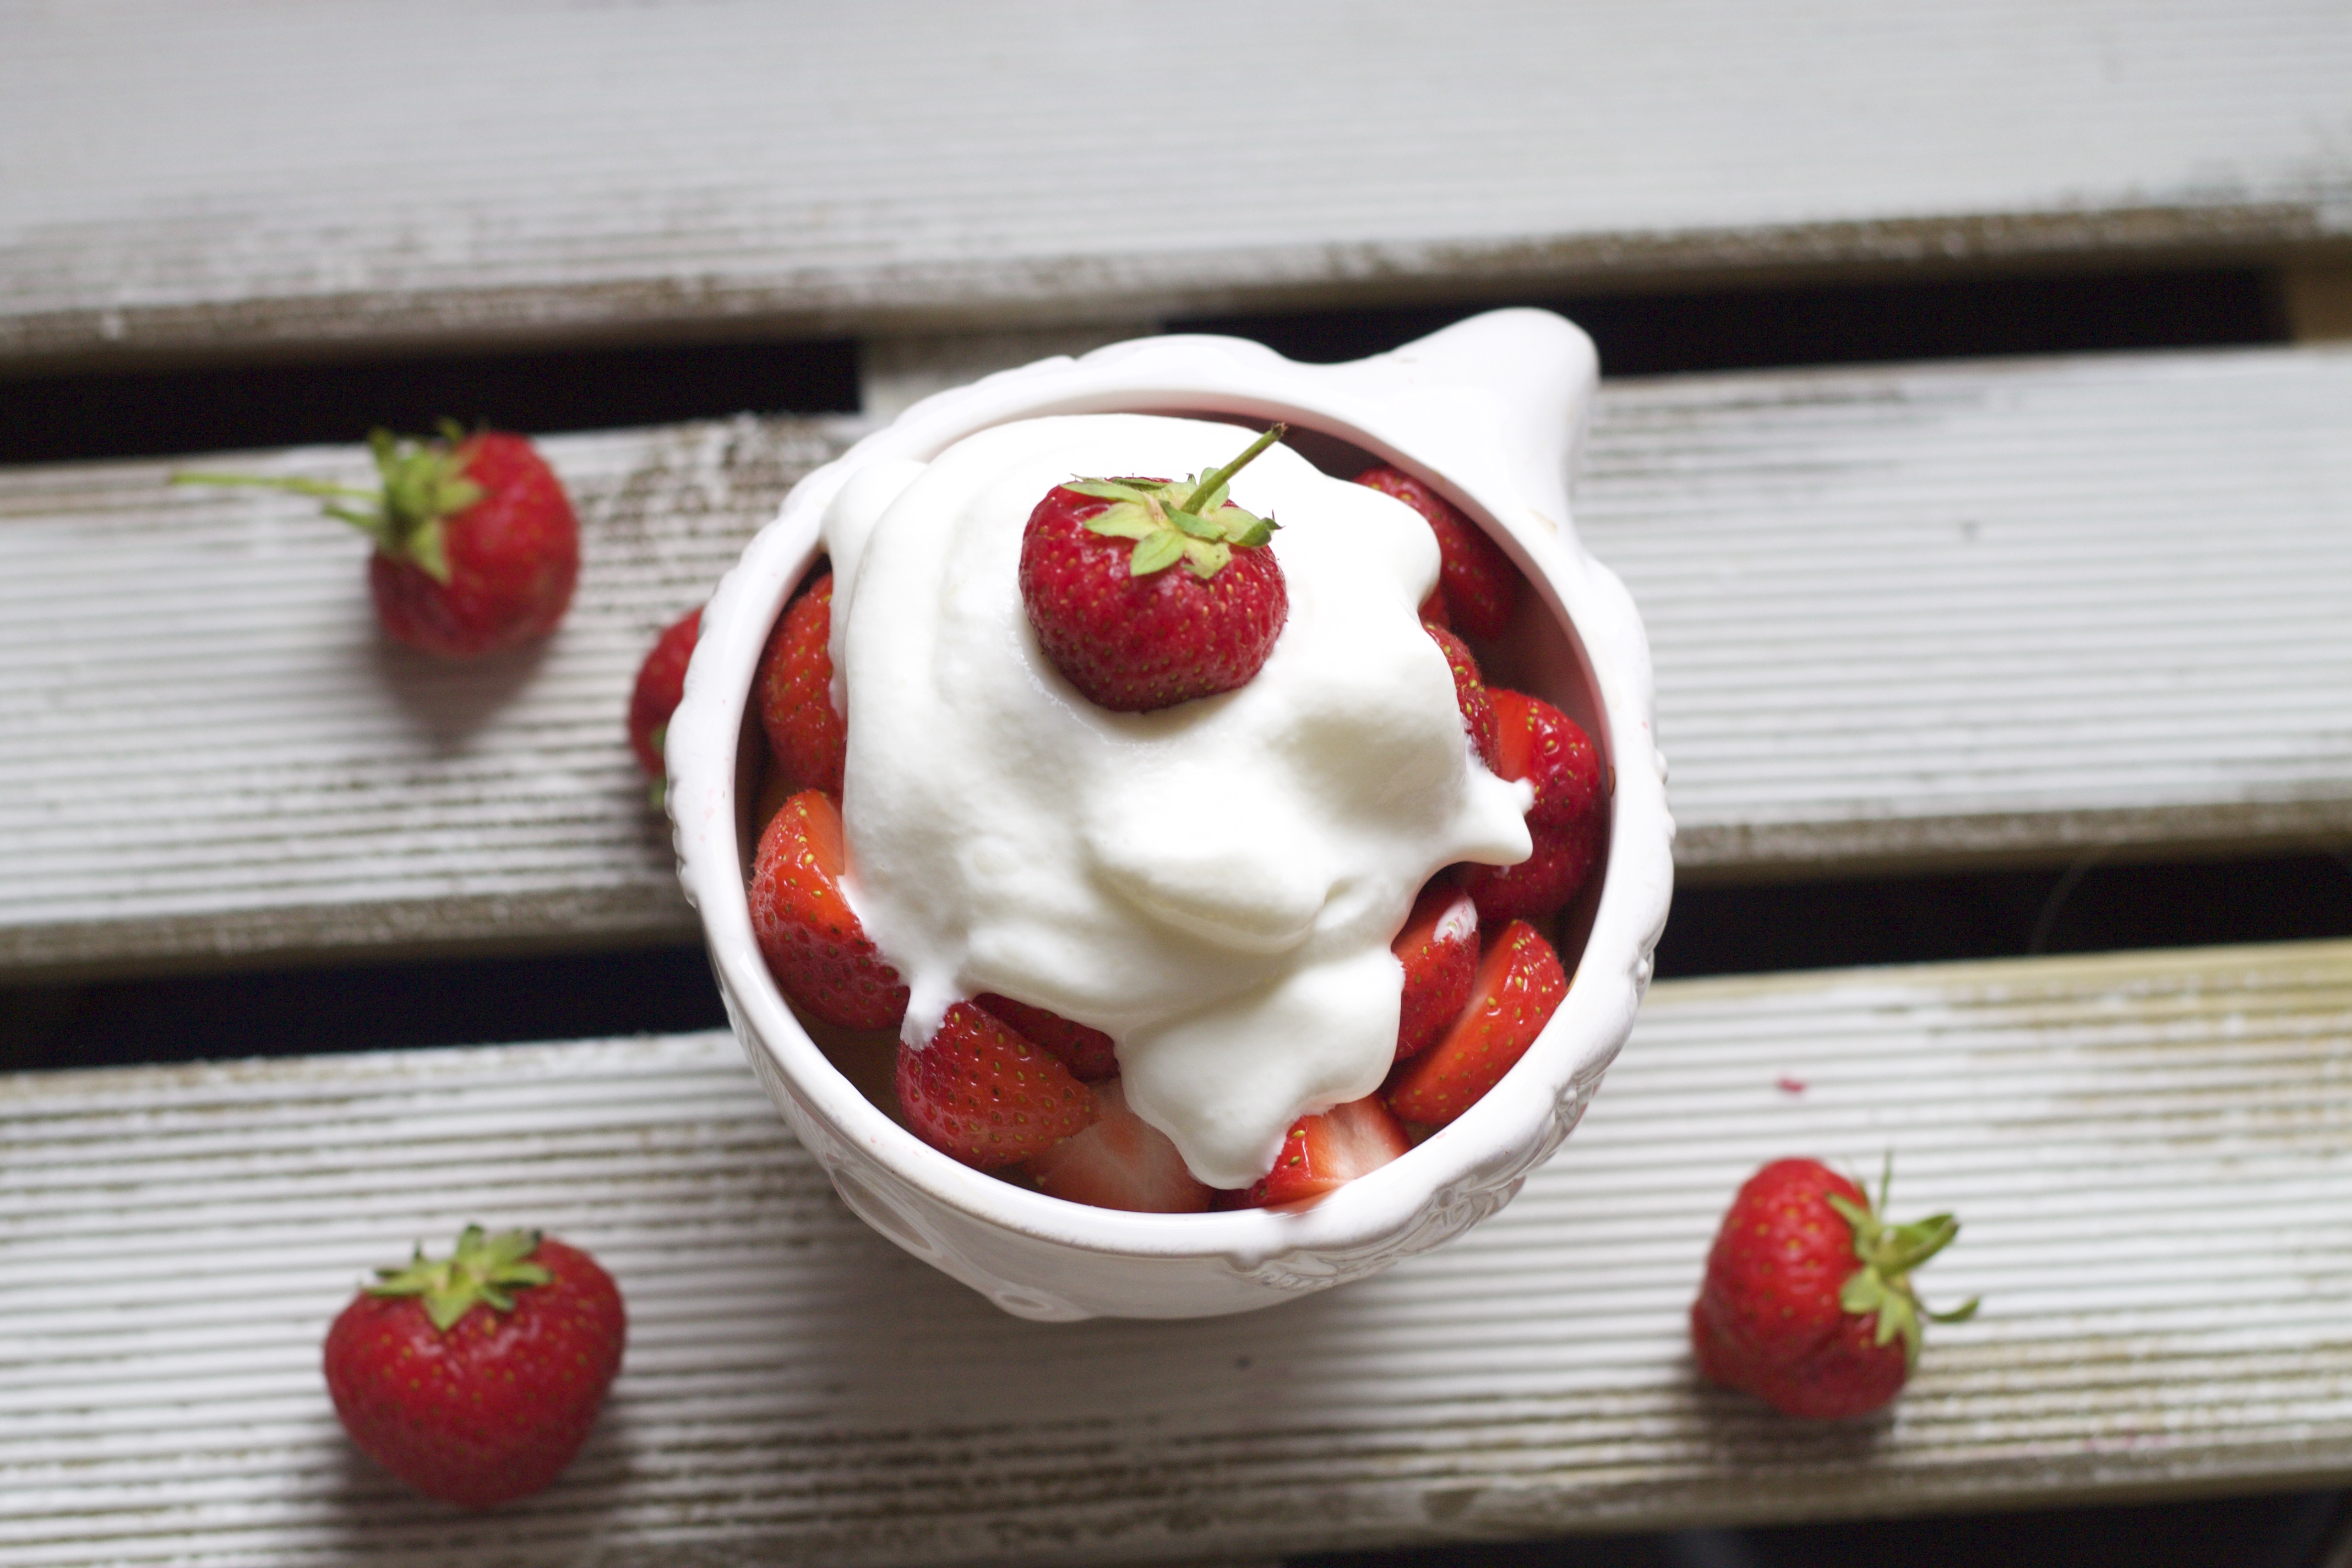 Strawberry and cream bukkake